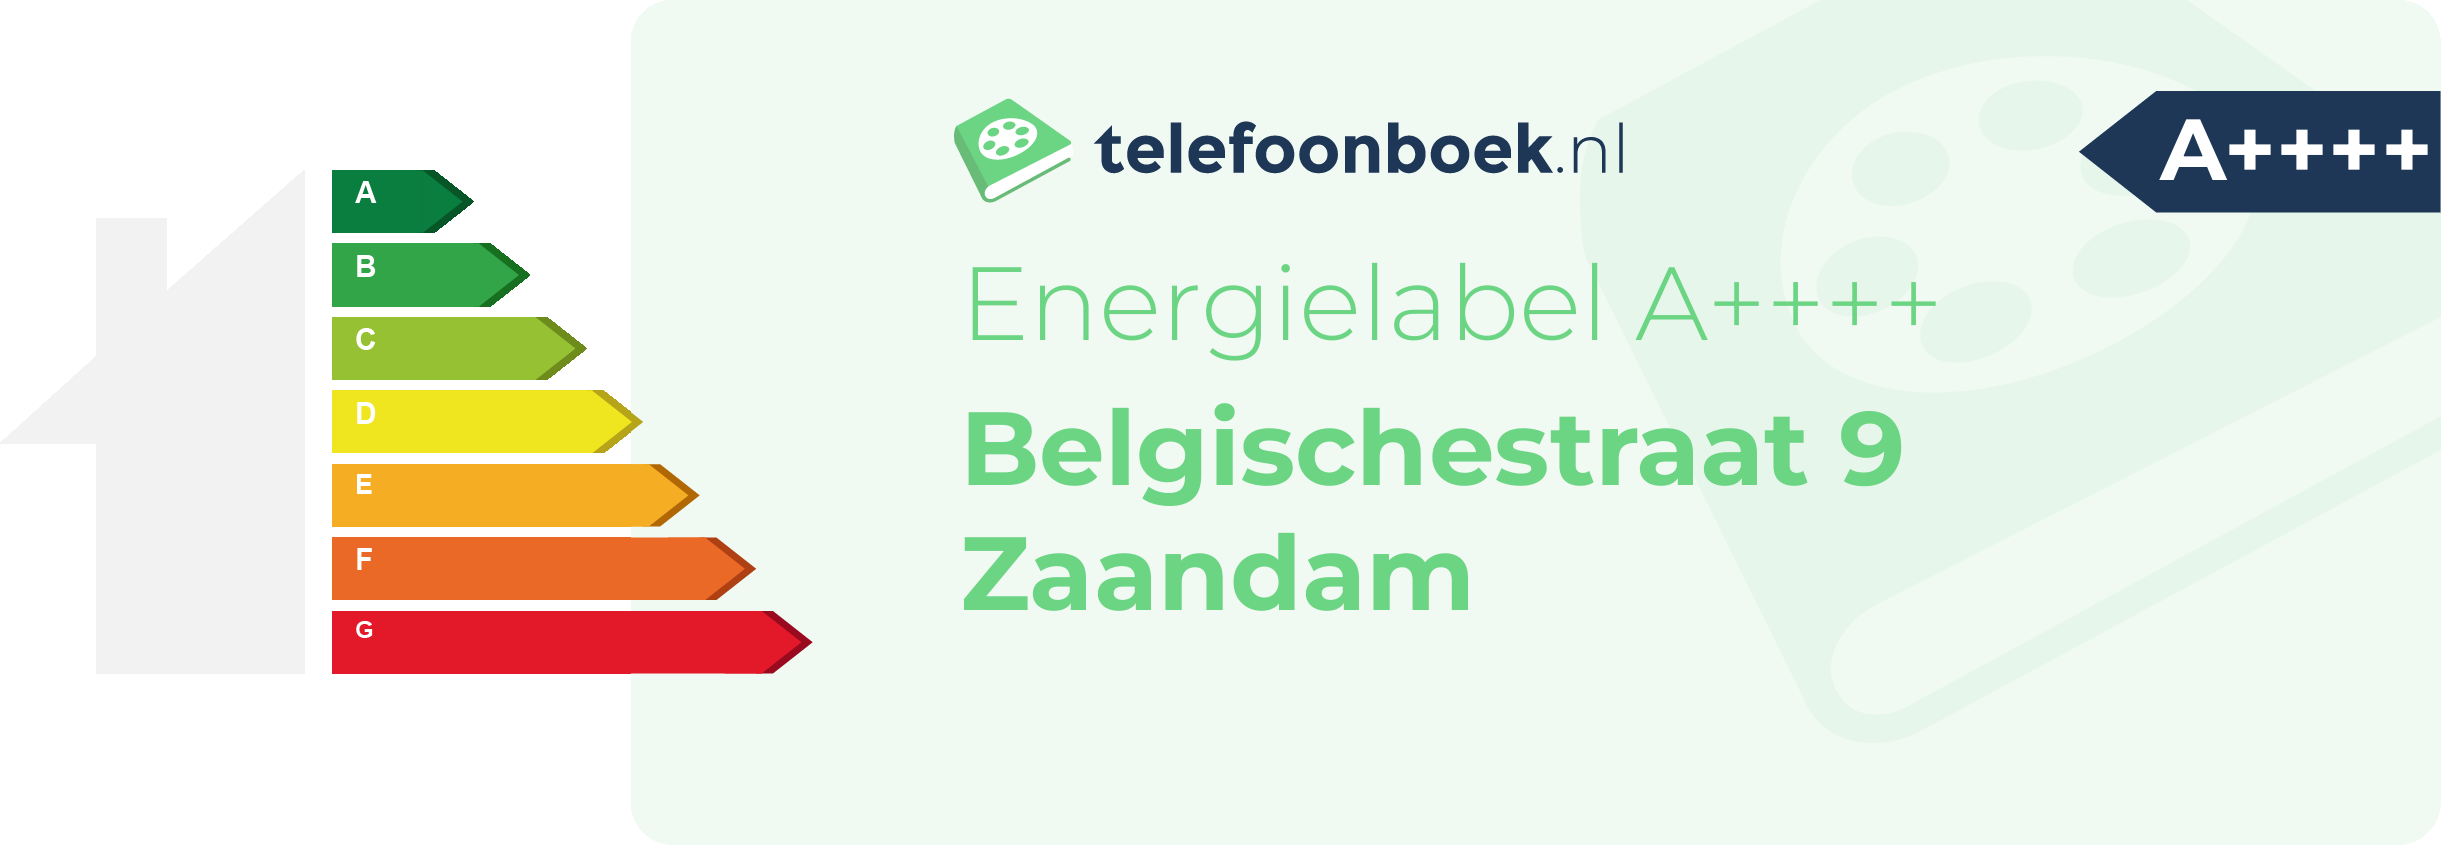 Energielabel Belgischestraat 9 Zaandam